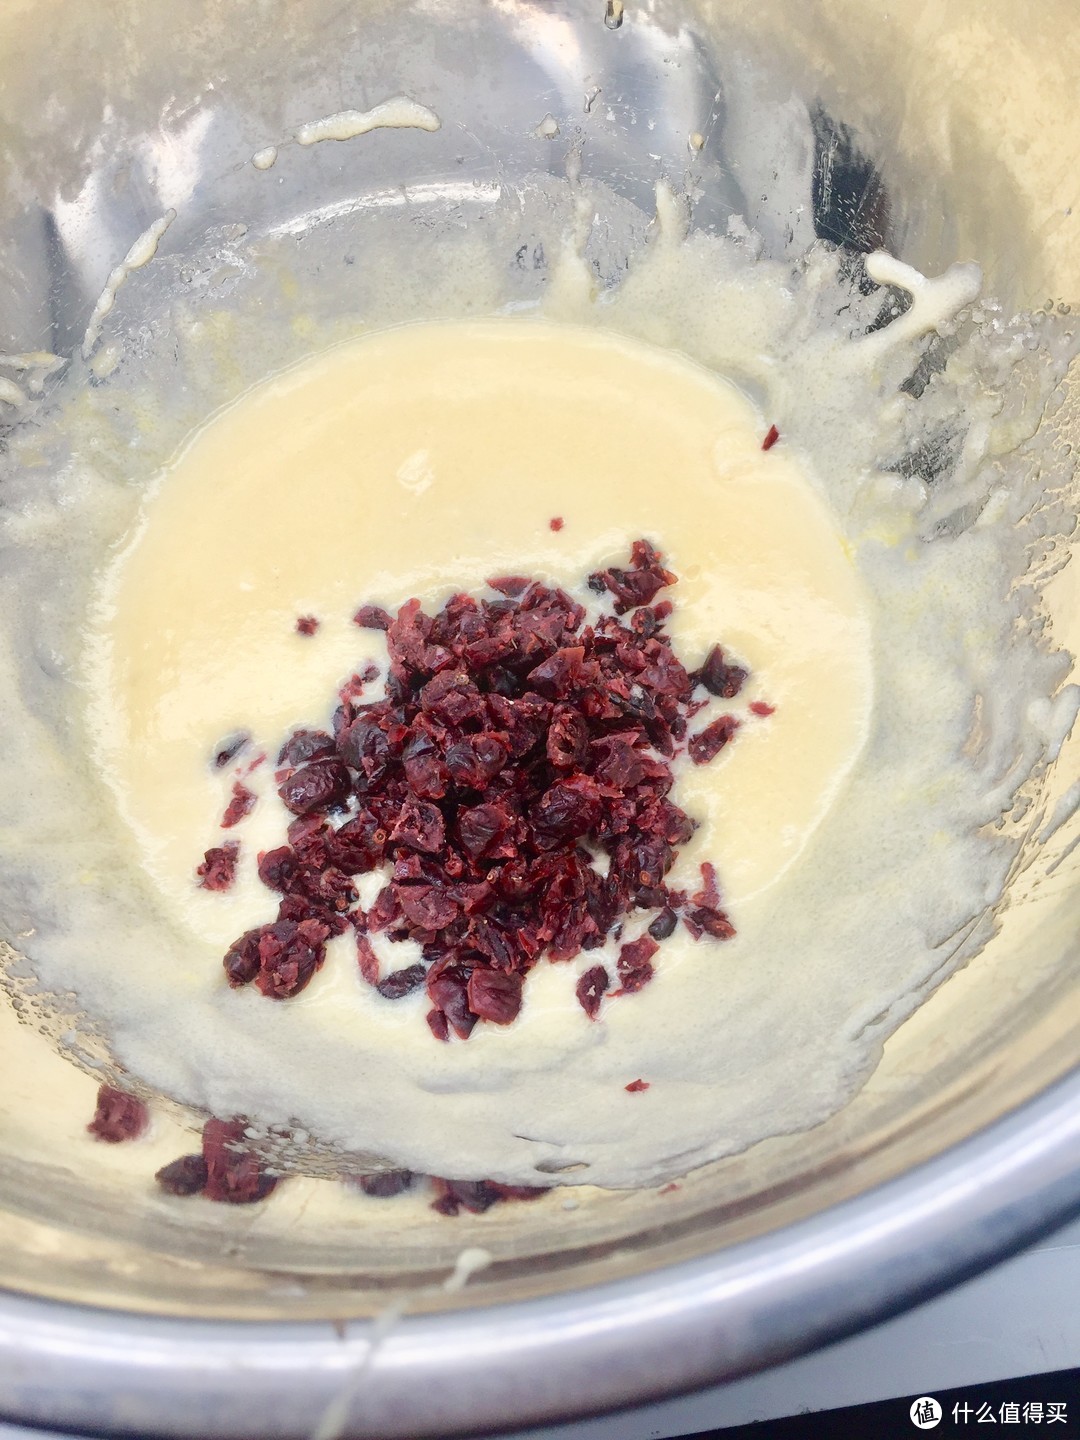 小白的烘焙之路—小试蔓越莓饼干